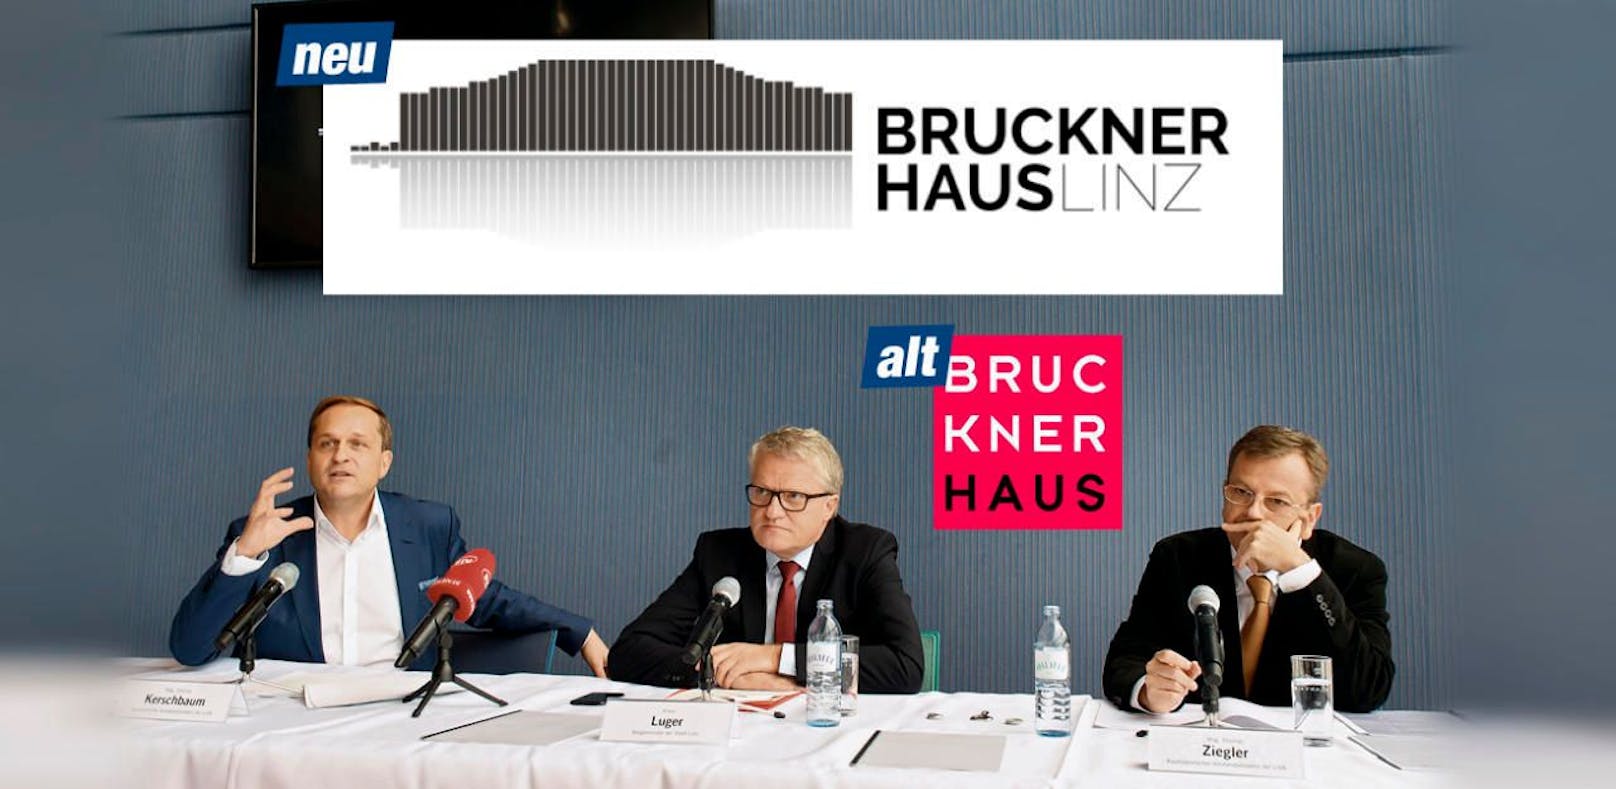 Dietmar Kerschbaum, Stadtchef Klaus Luger und Thomas Ziegler (v.li.) bei der Präsentation des neuen Logos. Zum Vergleich das alte daneben.